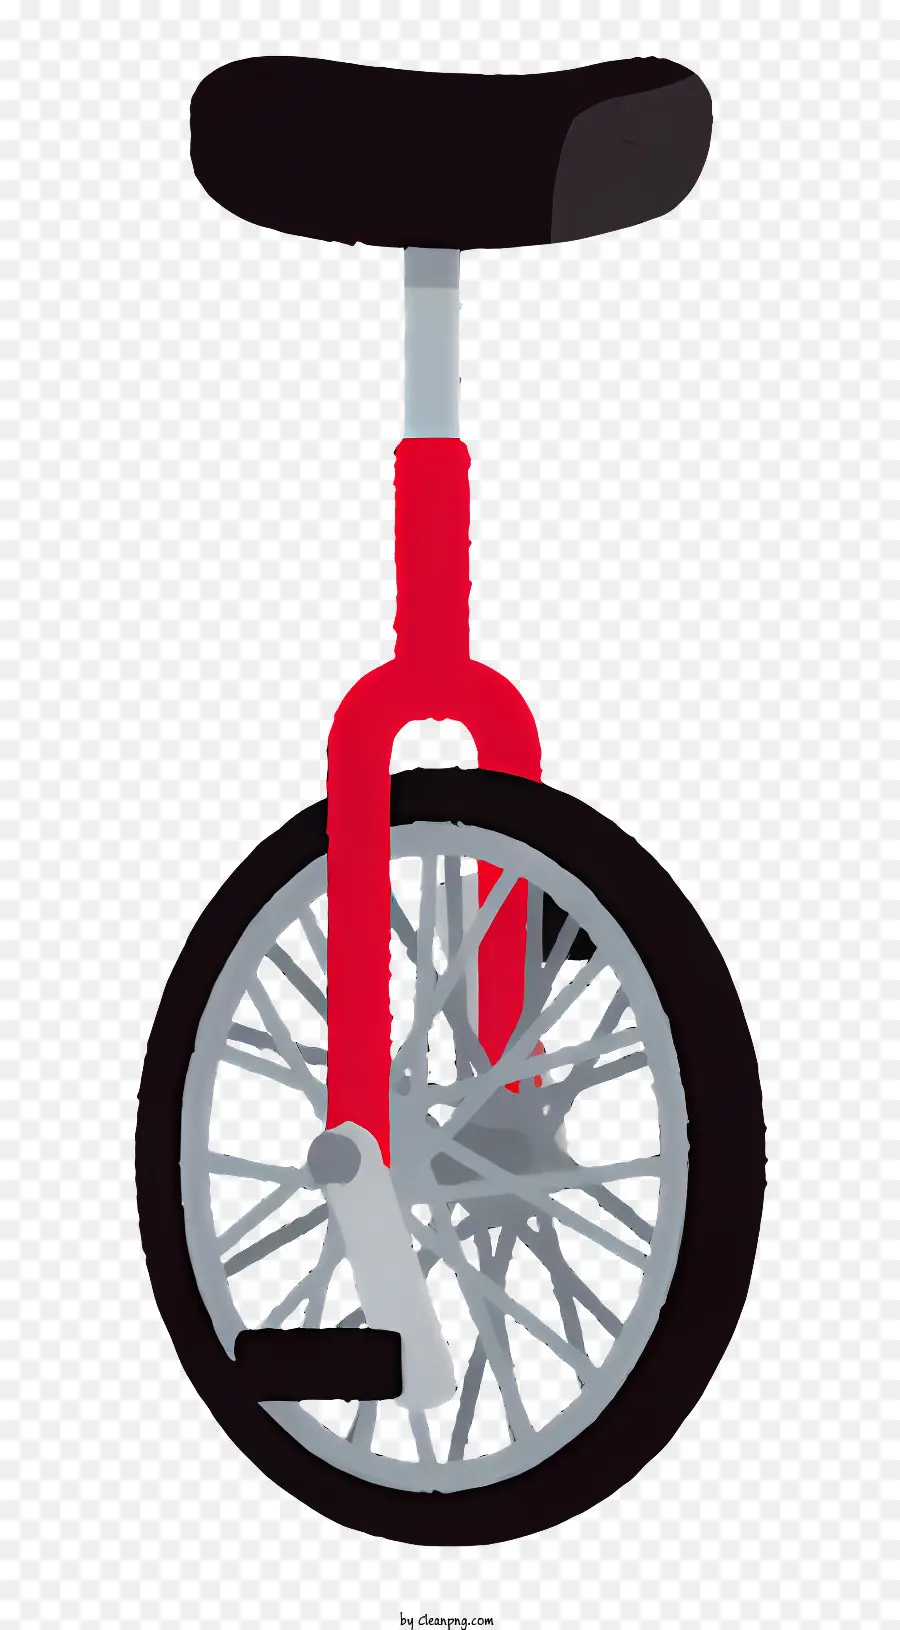 black und white border - Roter Sitz, schwarzer Reifen -Einrad auf schwarzem Hintergrund